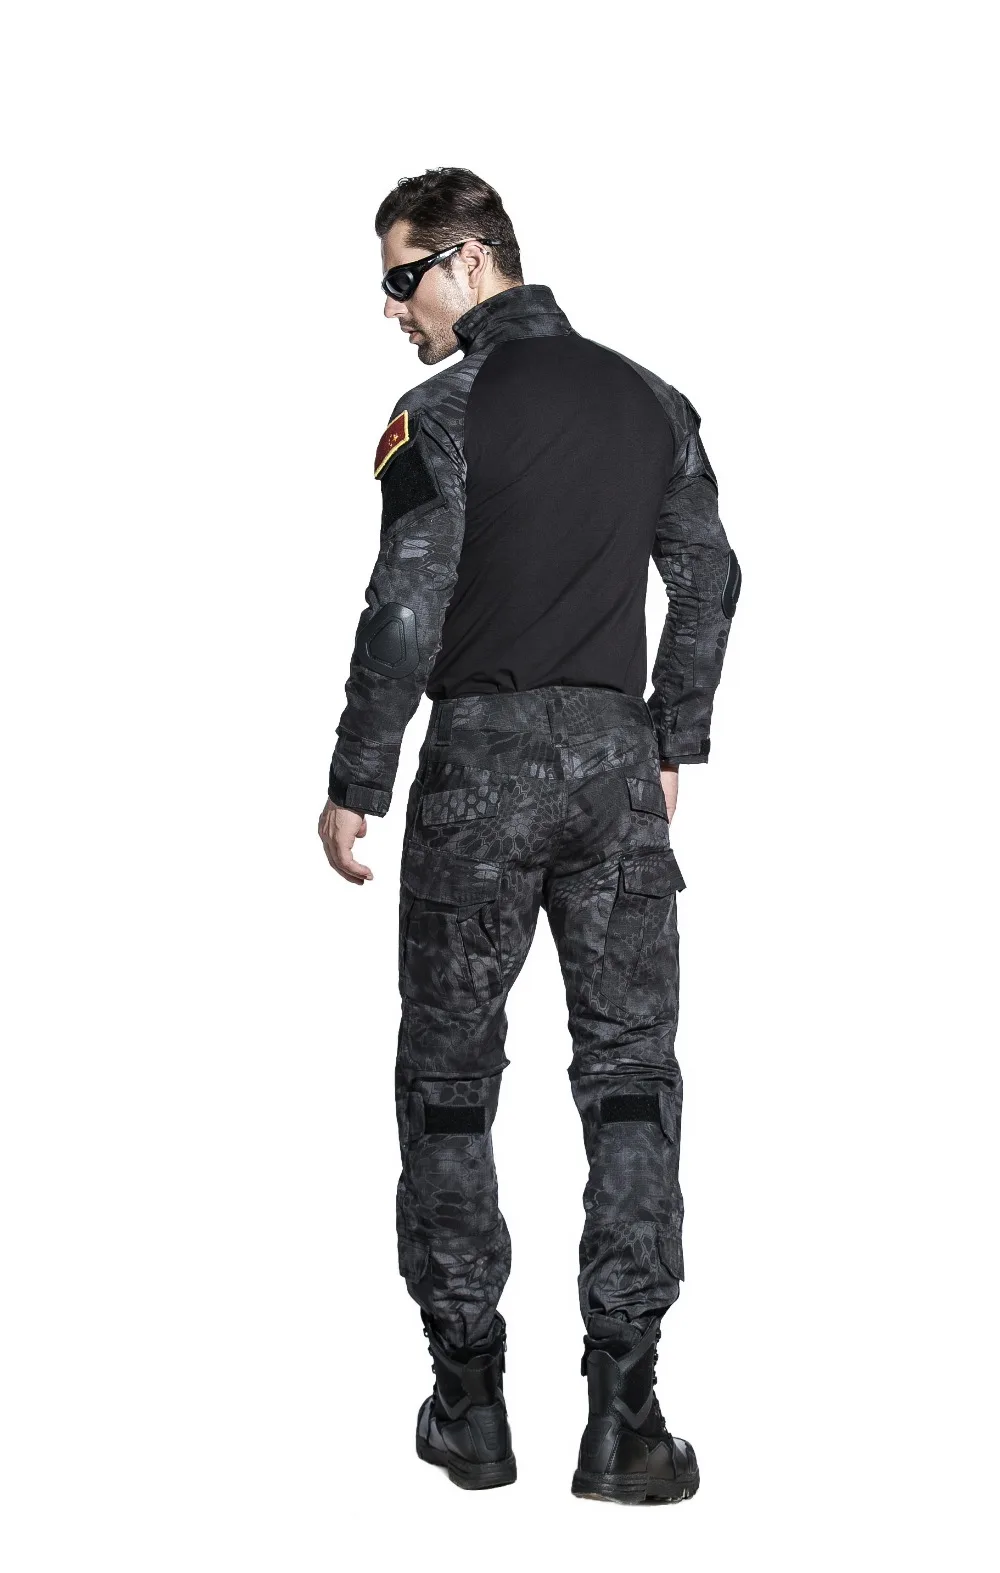 SINAIRSOFT ATAC FG камуфляж тактические военные походные брюки, страйкбол Painball США мужские армейские брюки карго, боевые ACU CP